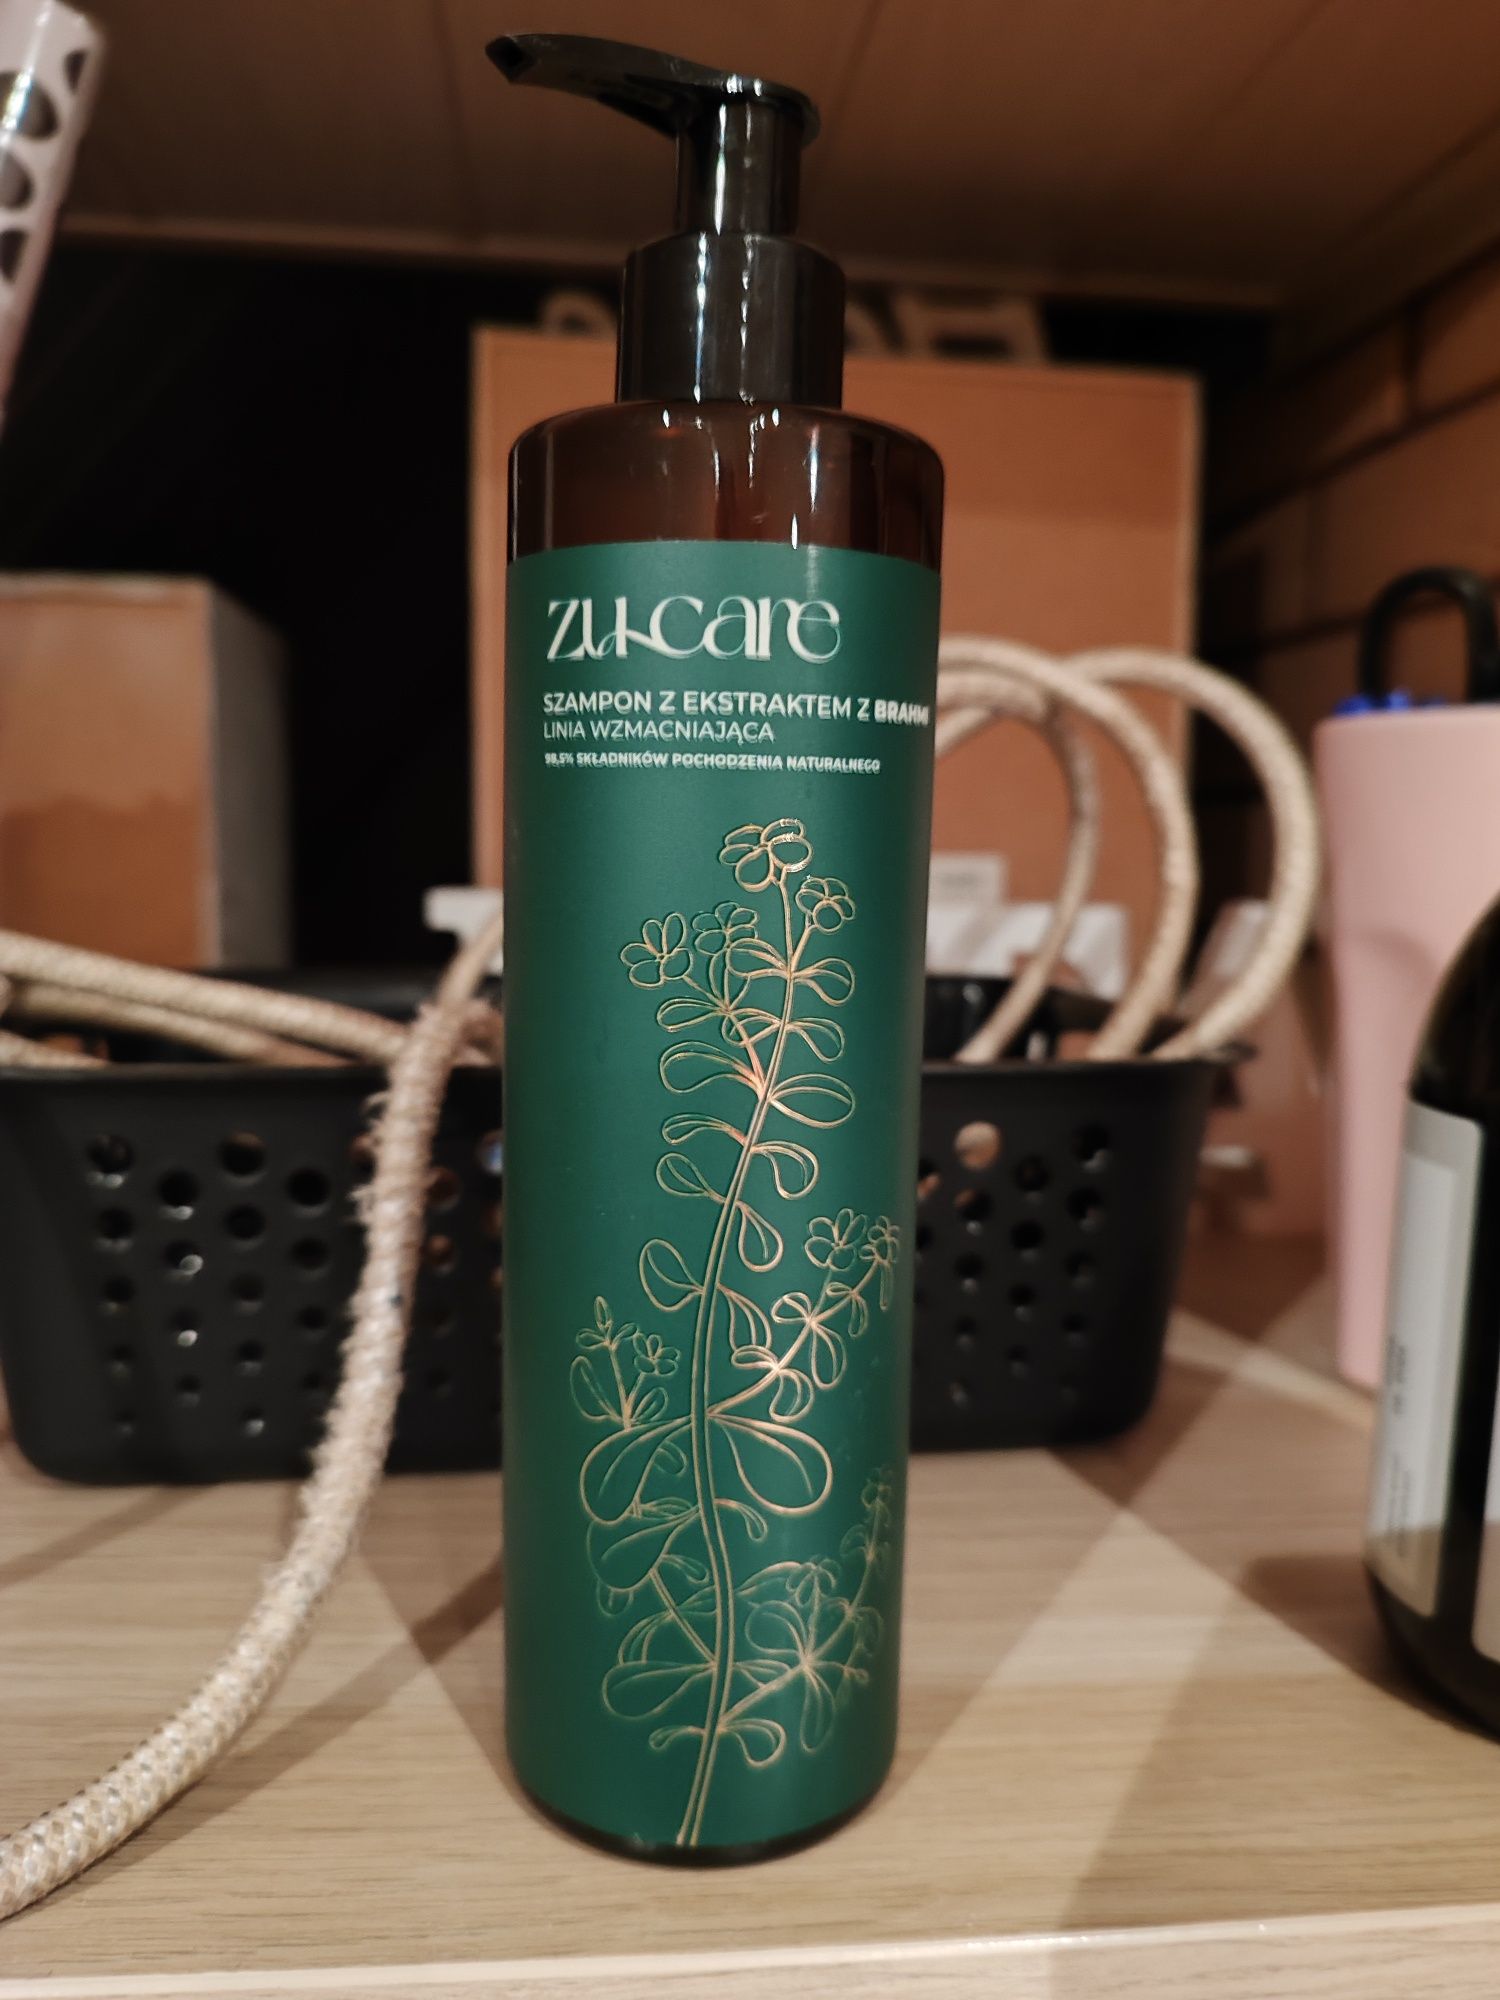 Zu Care ZuCare szampon wzmacniający brahmi